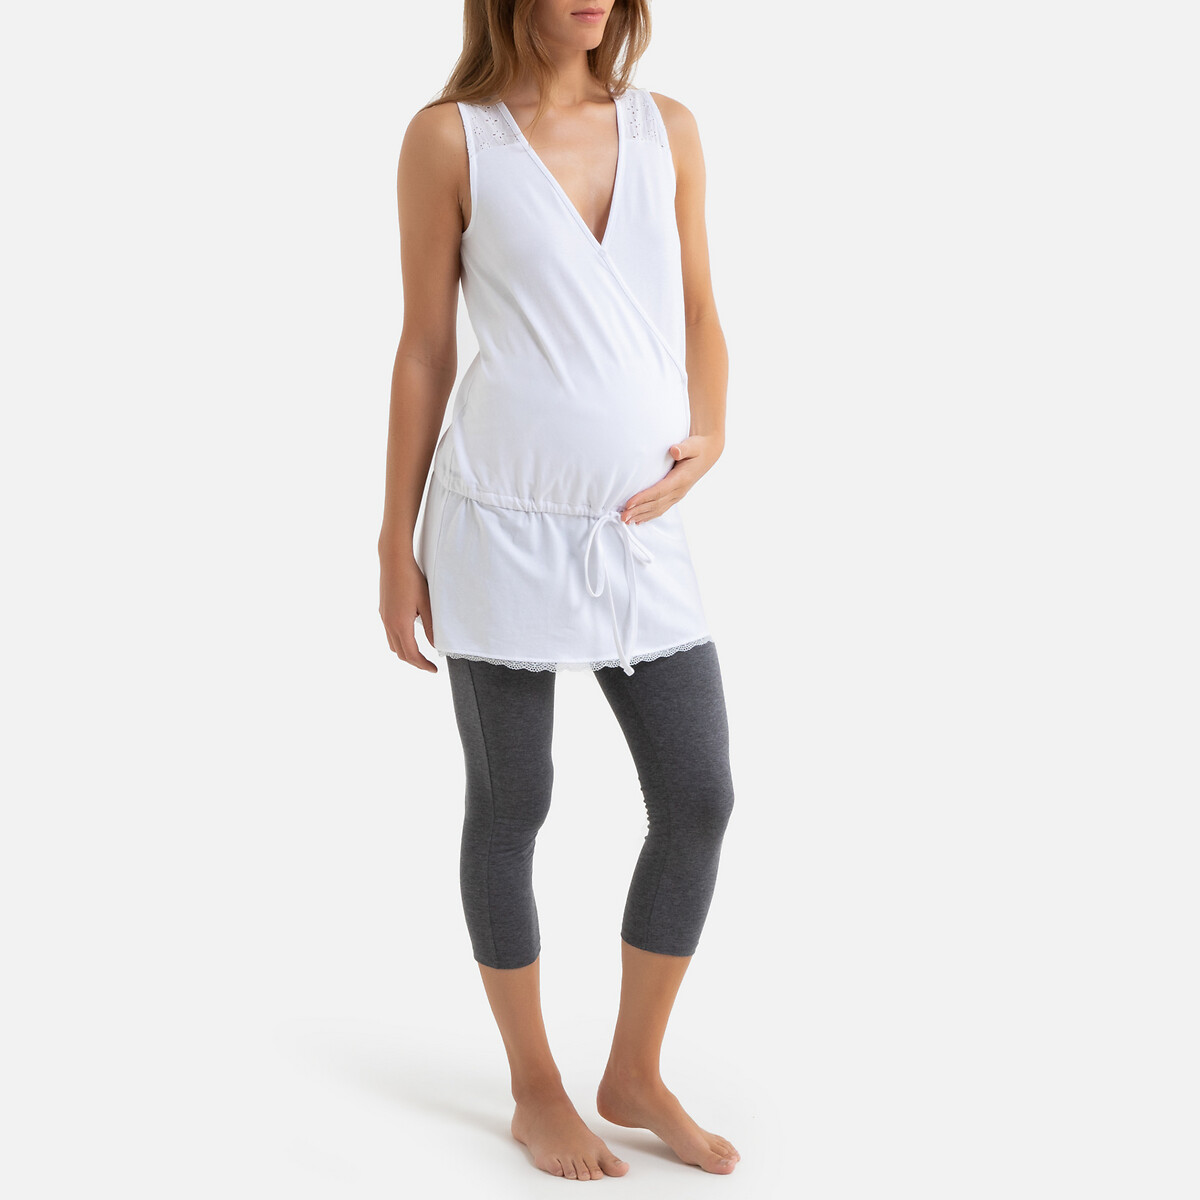 Пижама La Redoute Для периода беременности и грудного вскармливания 38/40 (FR) - 44/46 (RUS) белый, размер 38/40 (FR) - 44/46 (RUS)